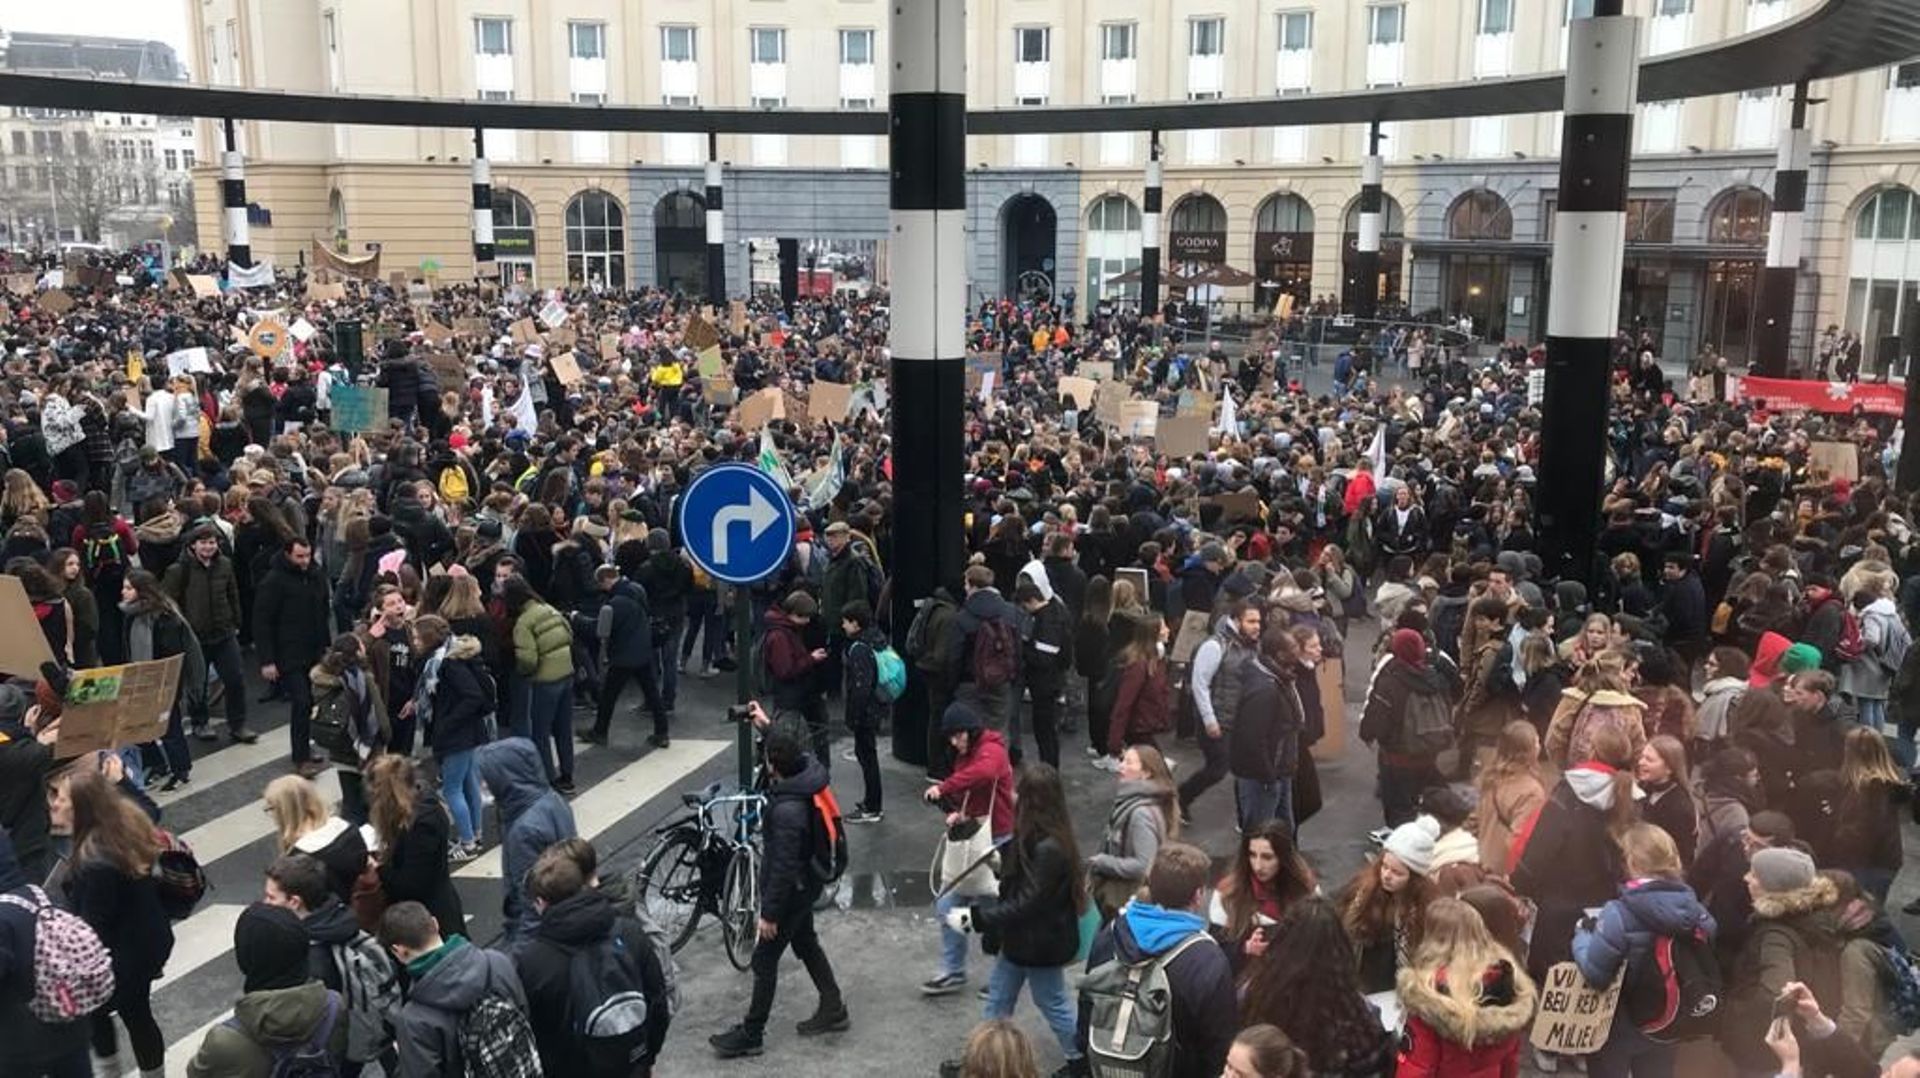 La manifestation s'est clôturée là où elle a débuté : à la Gare Centrale de Bruxelles